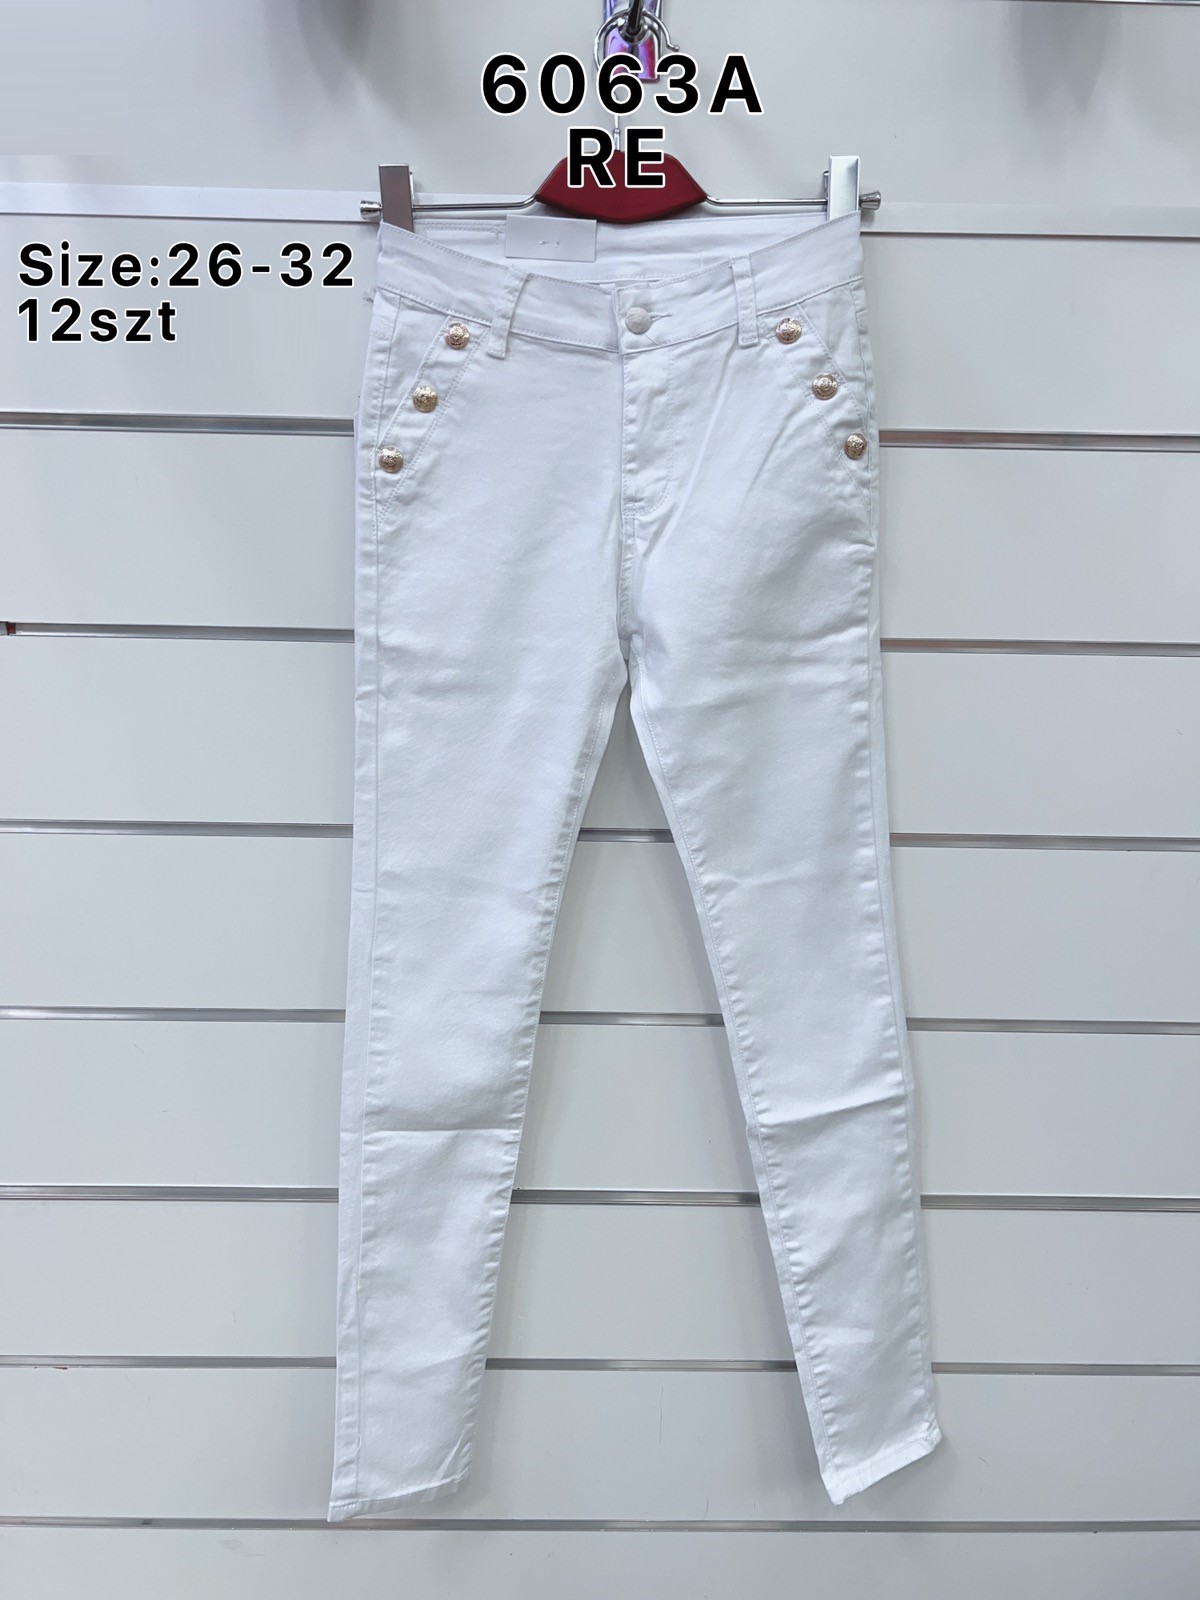 Spodnie  damskie jeans Roz  26-32.  1 kolor . Paczka 12sz.t